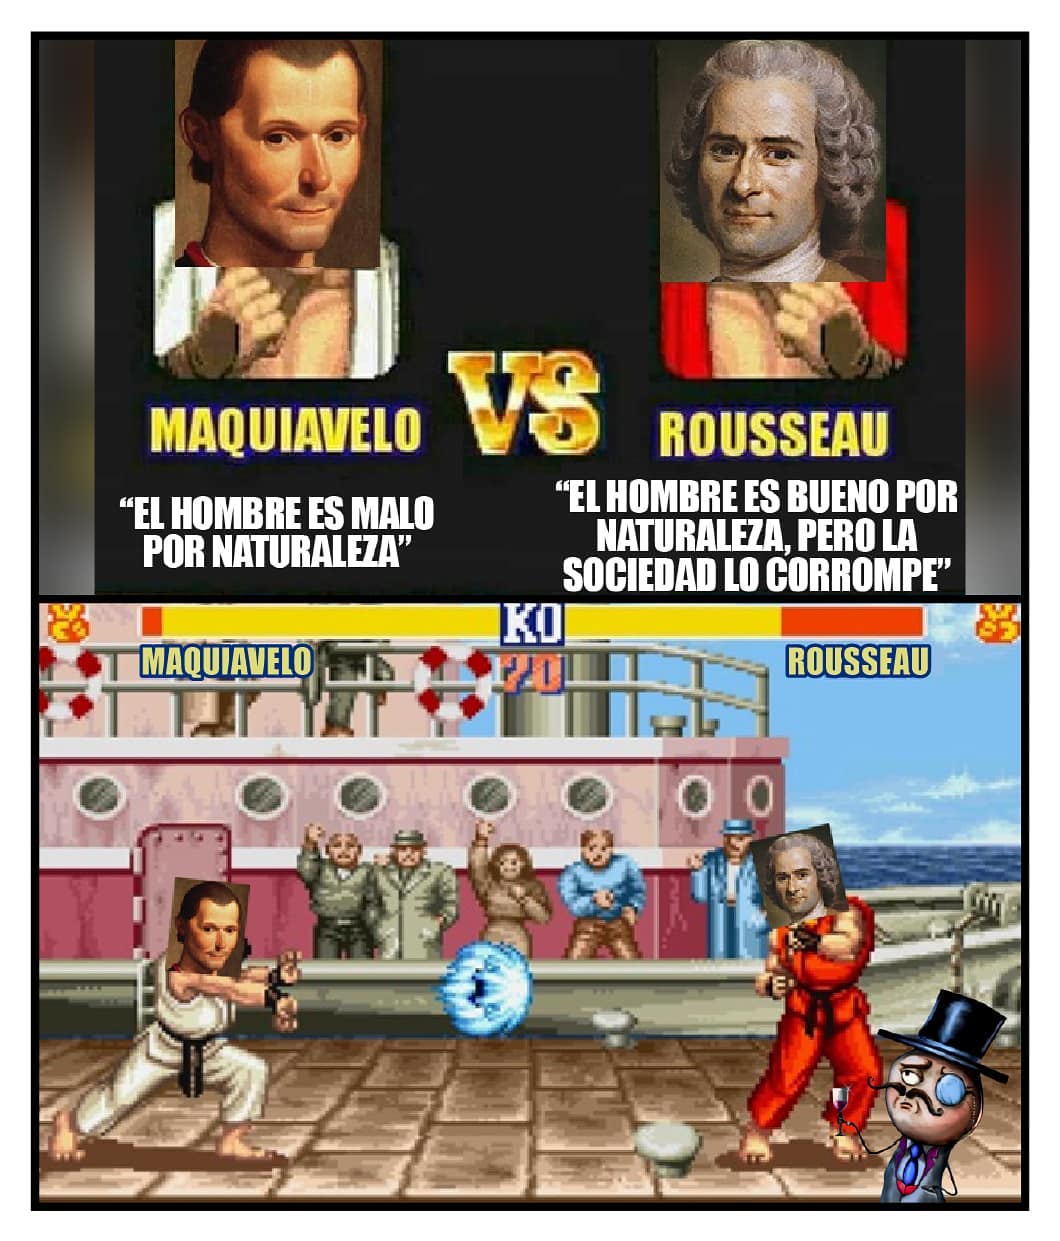 Maquiavelo "el hombre es malo por naturaleza" Rousseau "el hombre es bueno por naturaleza, perola sociedad lo corrompe"